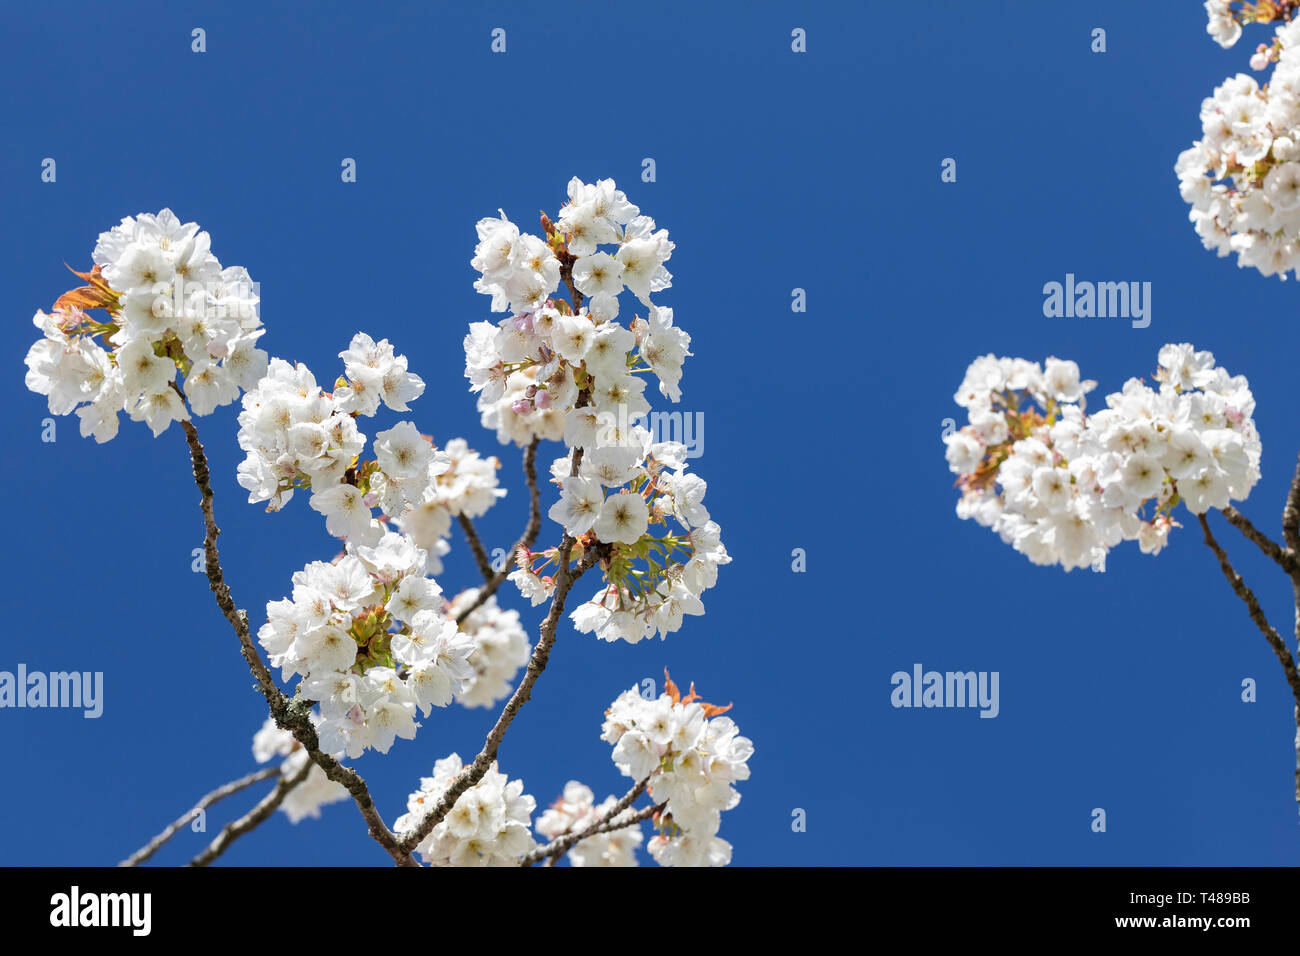 Gros plan de fleurs blanches de cerisier Prunus Tai Haku contre un ciel bleu, fleurissant au printemps, Angleterre, Royaume-Uni Banque D'Images